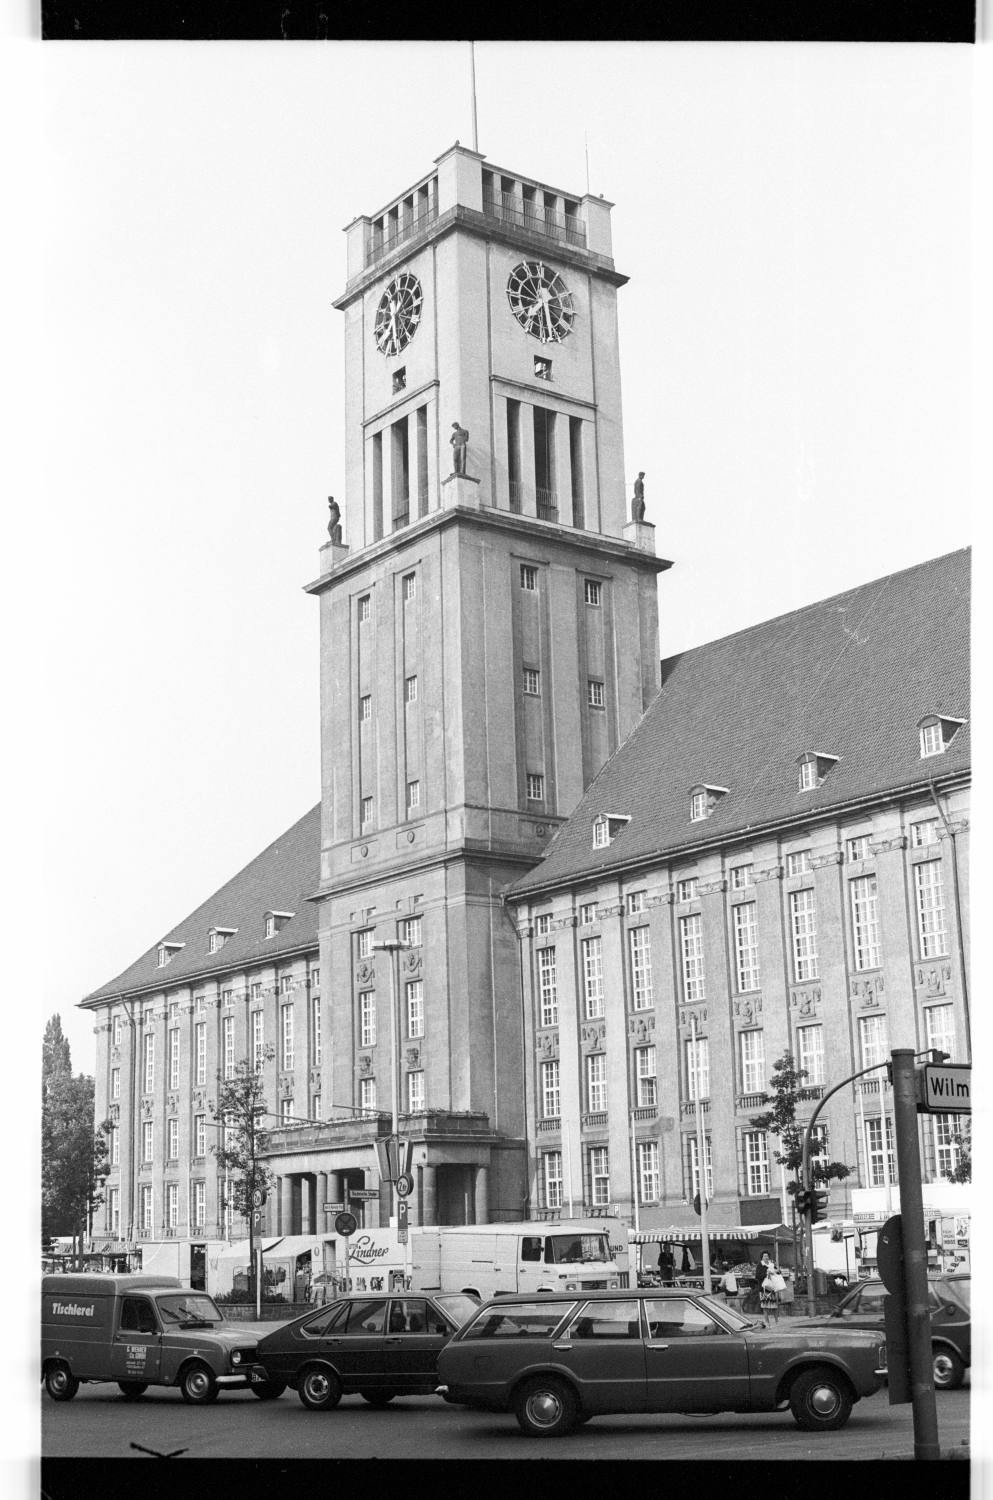 Kleinbildnegativ: Rathaus Schöneberg, 1981 (Museen Tempelhof-Schöneberg/Jürgen Henschel RR-F)